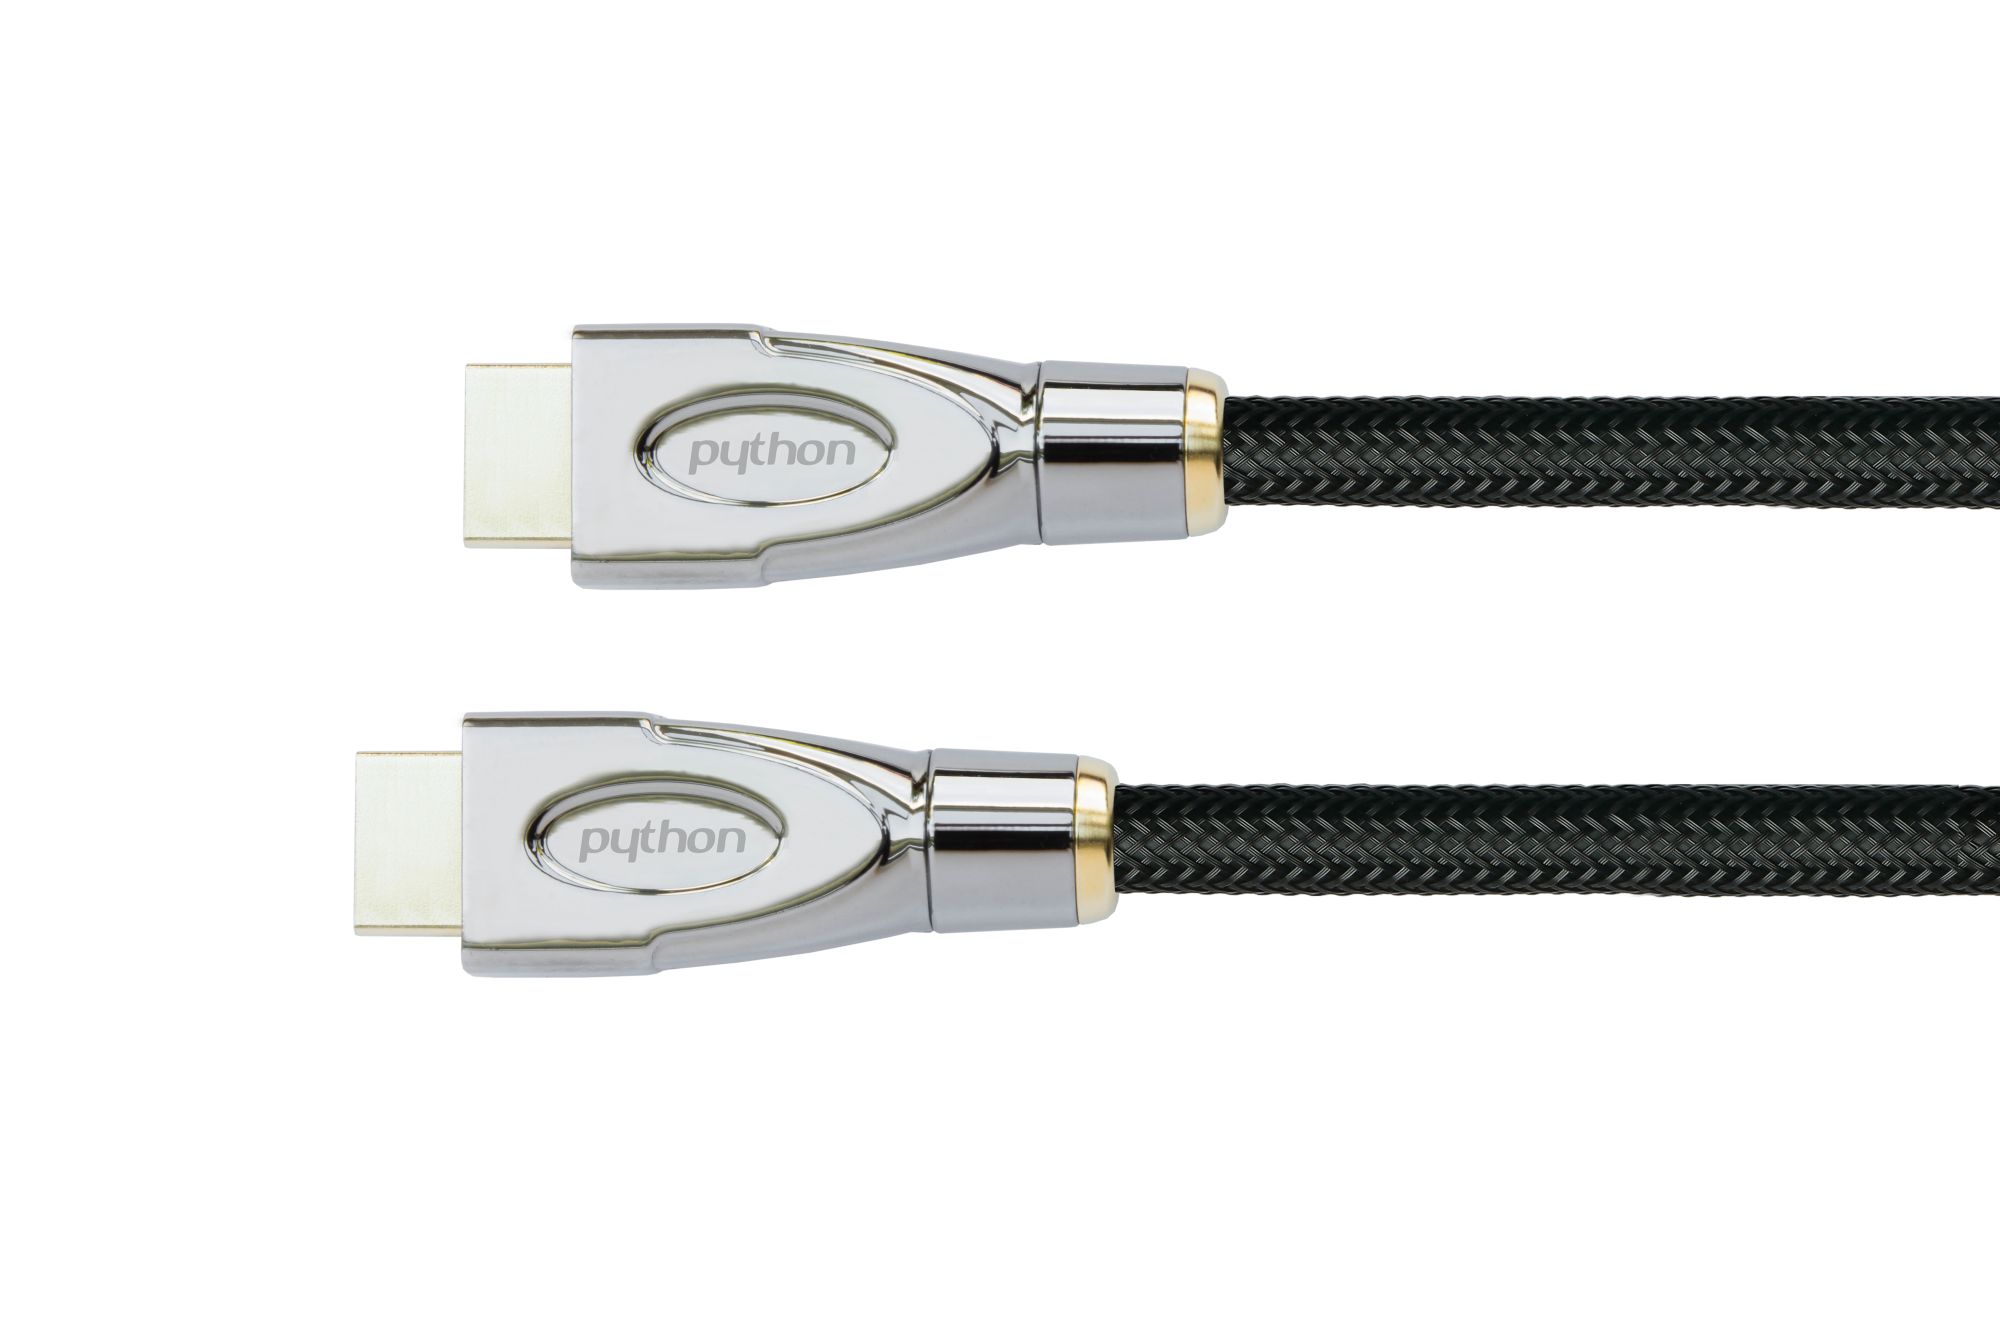 Anschlusskabel High-Speed-HDMI® mit Ethernet 4K2K/UHD, AKTIV (Redmere Chips), Nylobgefl. schwarz,15m